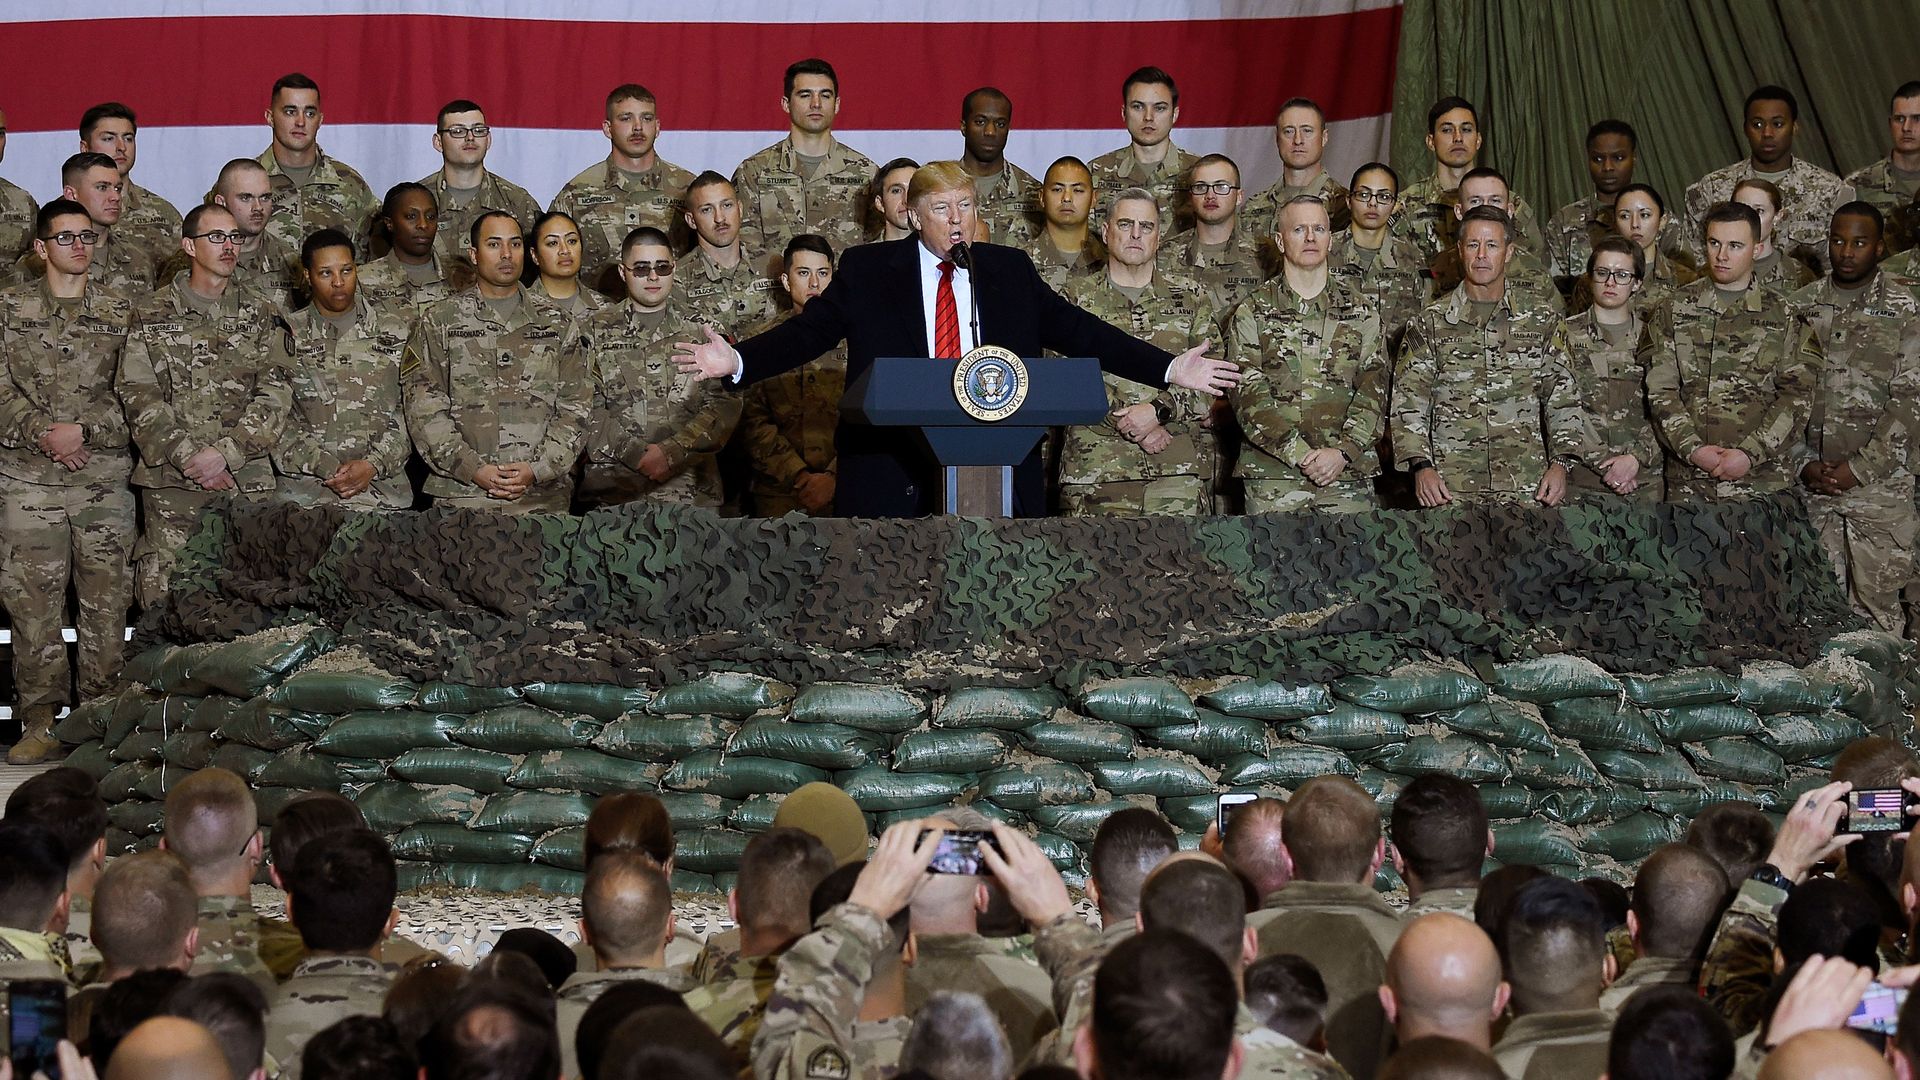 Trump addressing US troops in Afghanistan